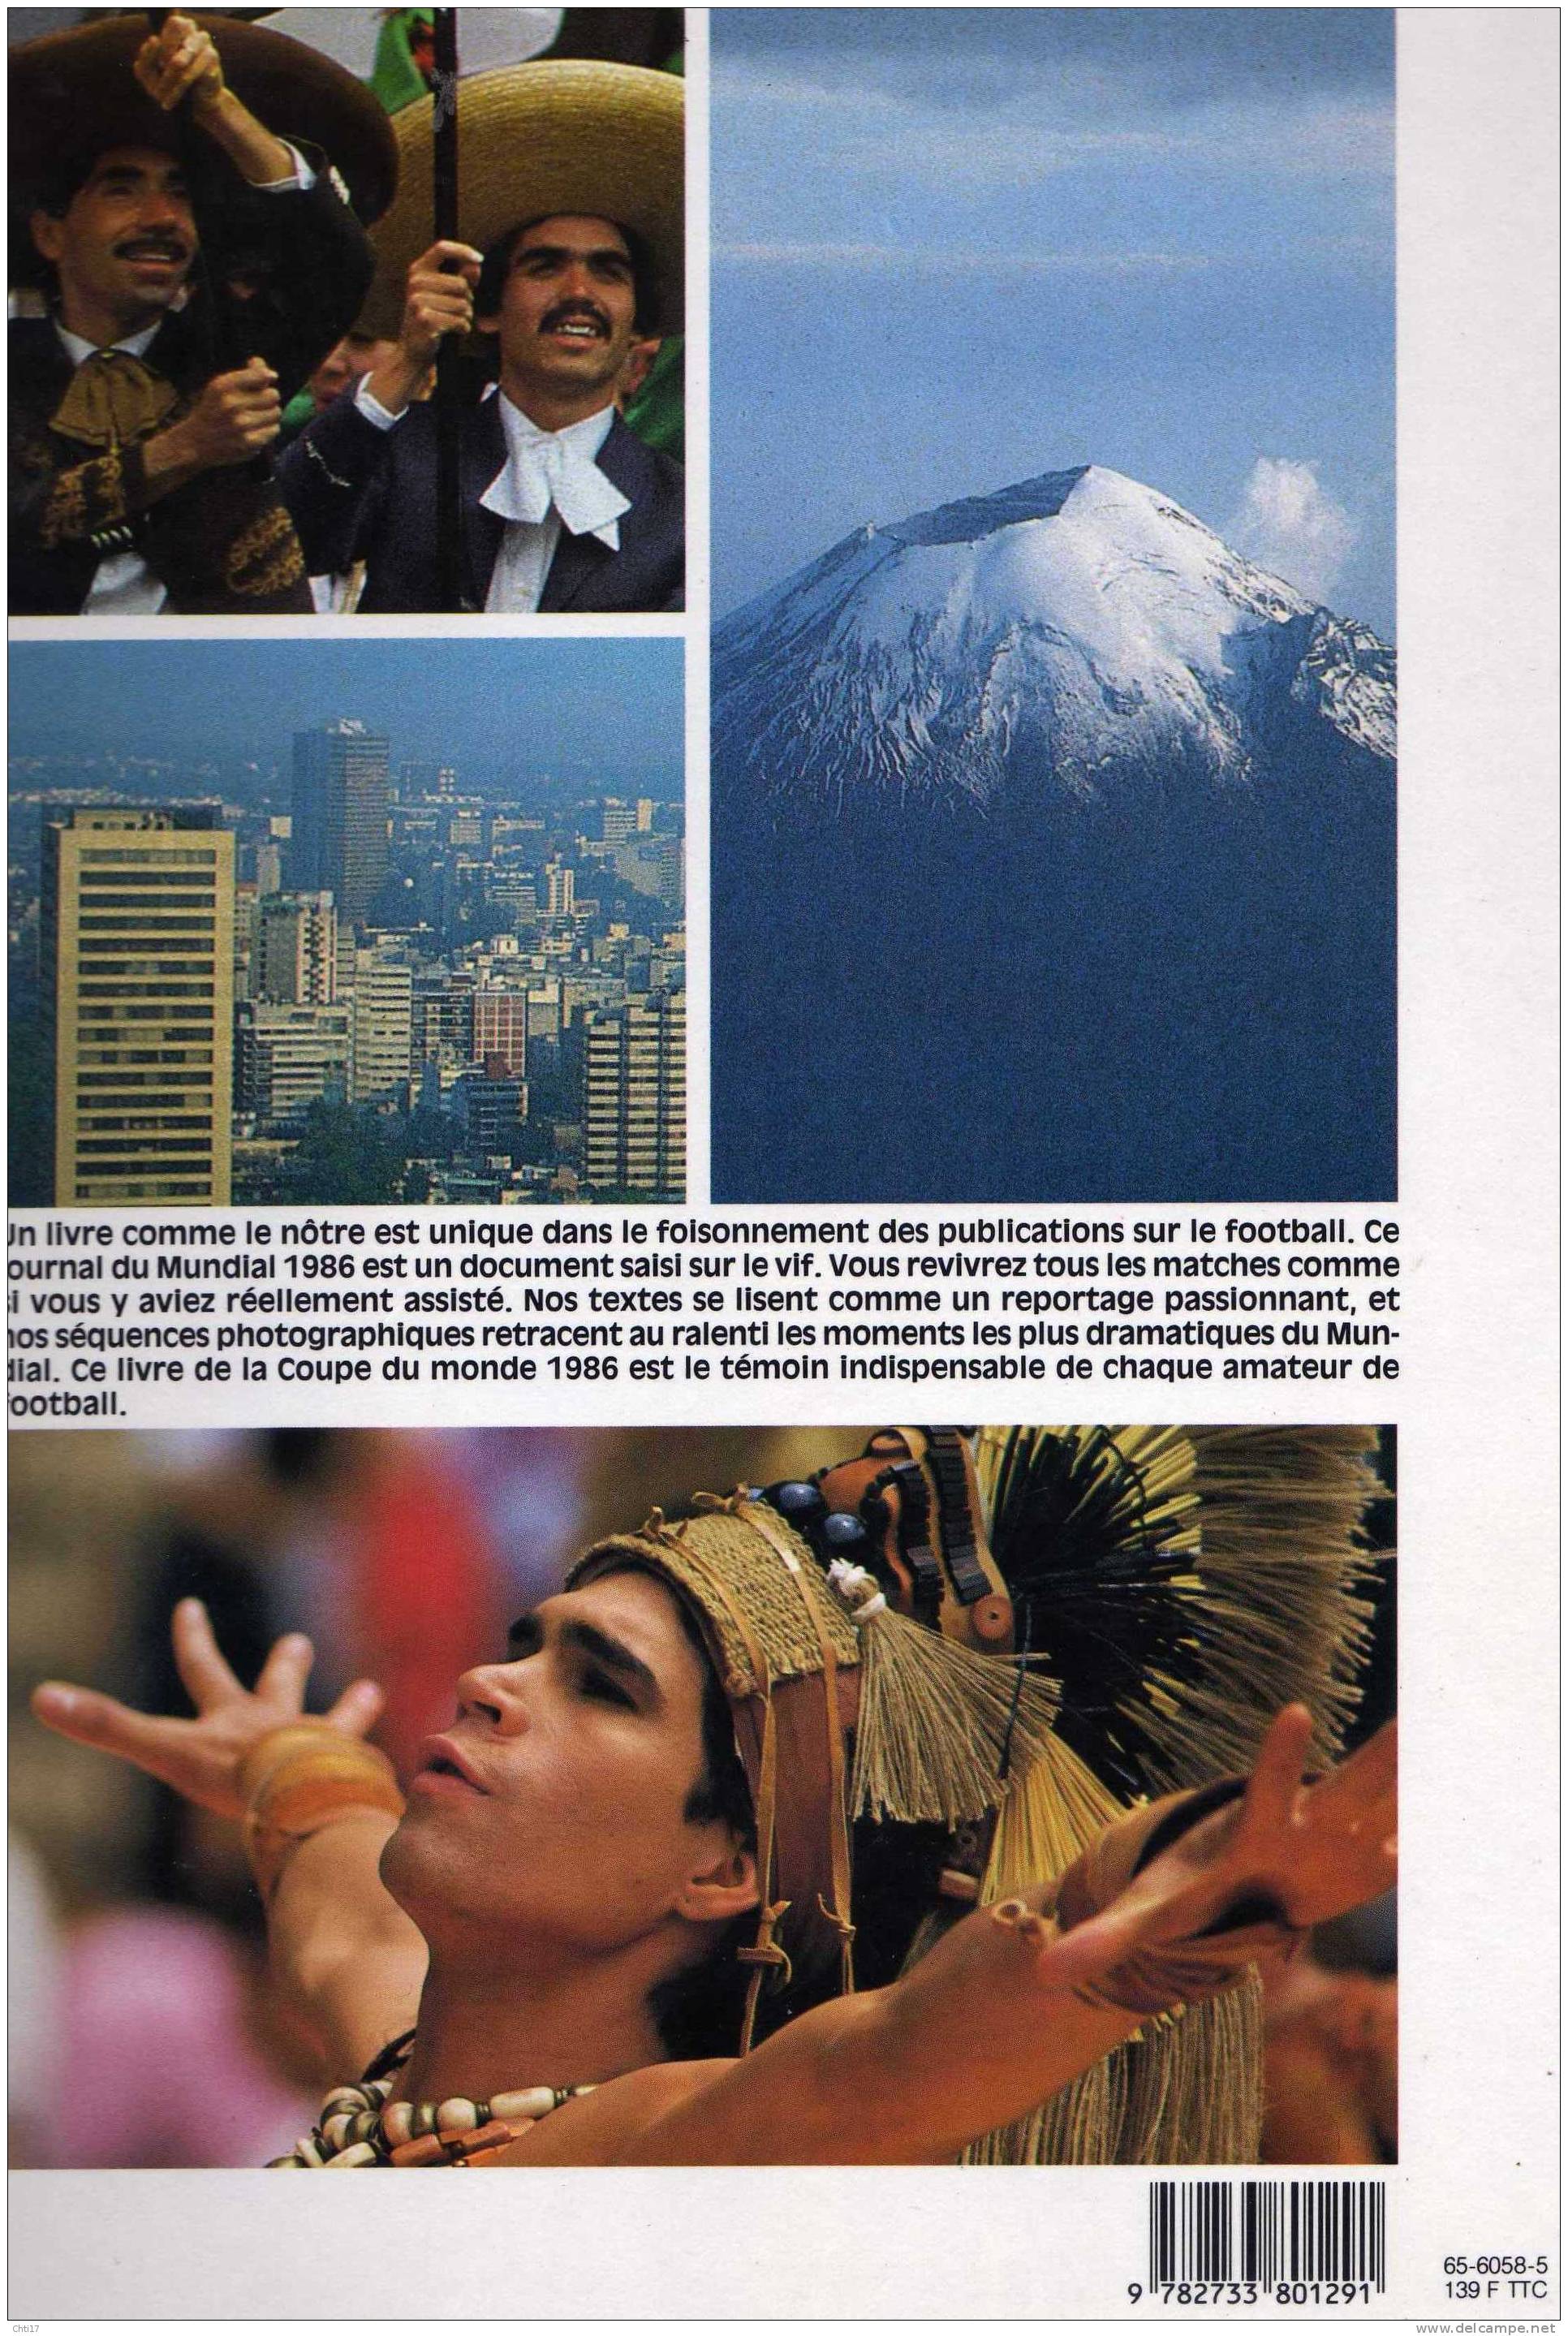 MEXICO 1986 L OFFICIEL DE LA COUPE DU MODE DE FOOTBALL EDITIONS PHILIPPE AUZOU EN 1986 - Books